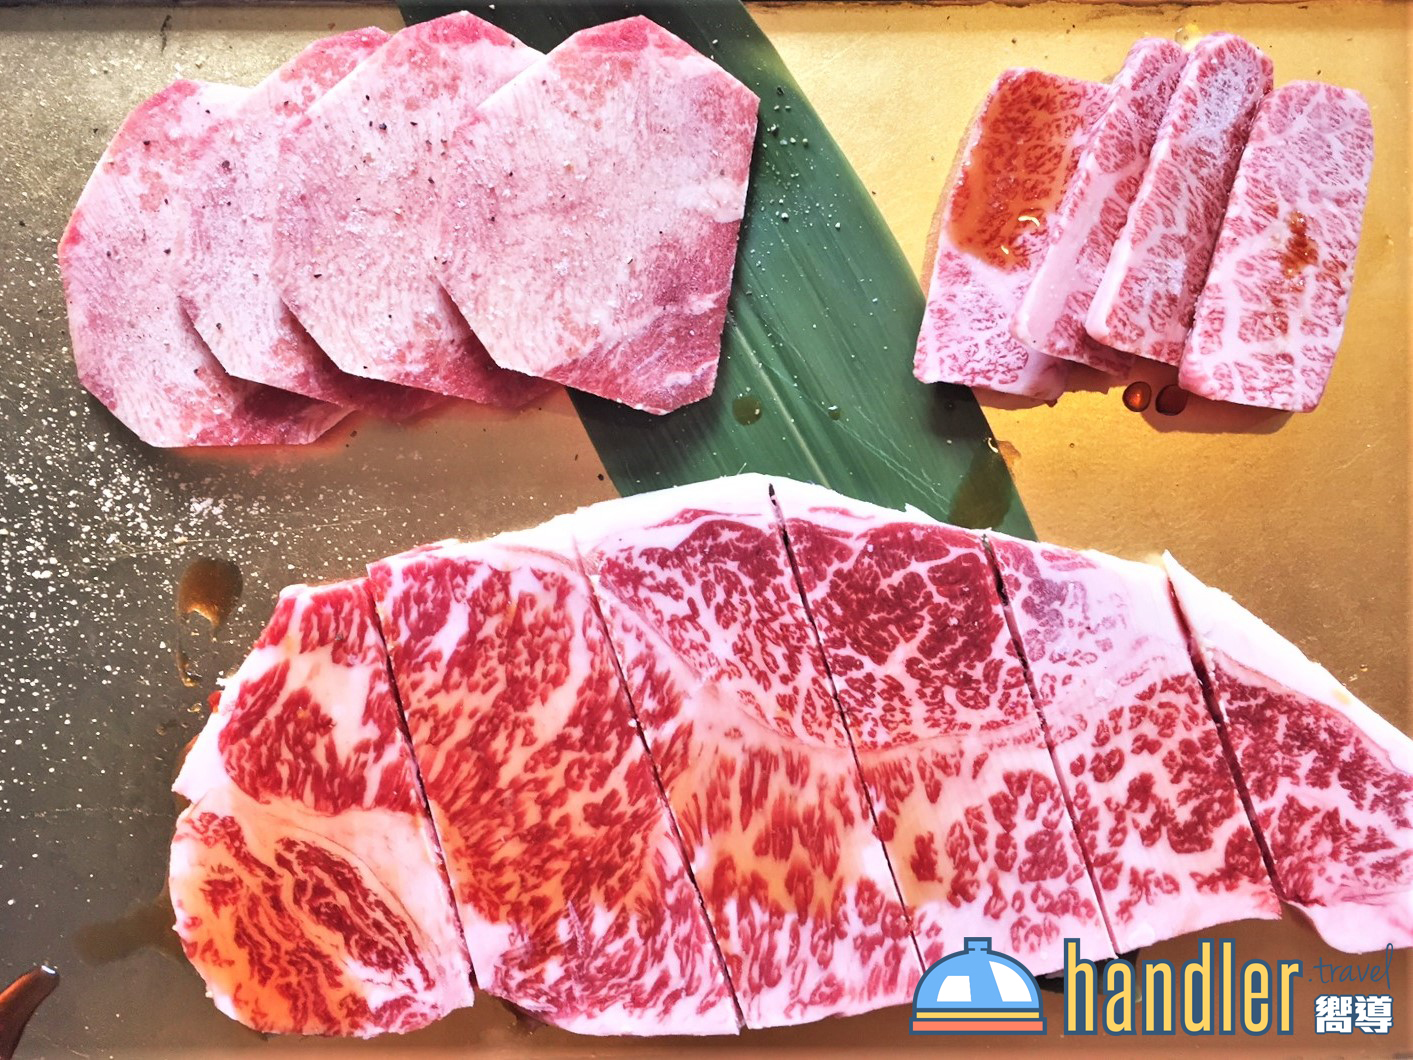 東京必食 新宿燒肉 六歌仙 松板牛 黑毛和牛 炭燒燒肉